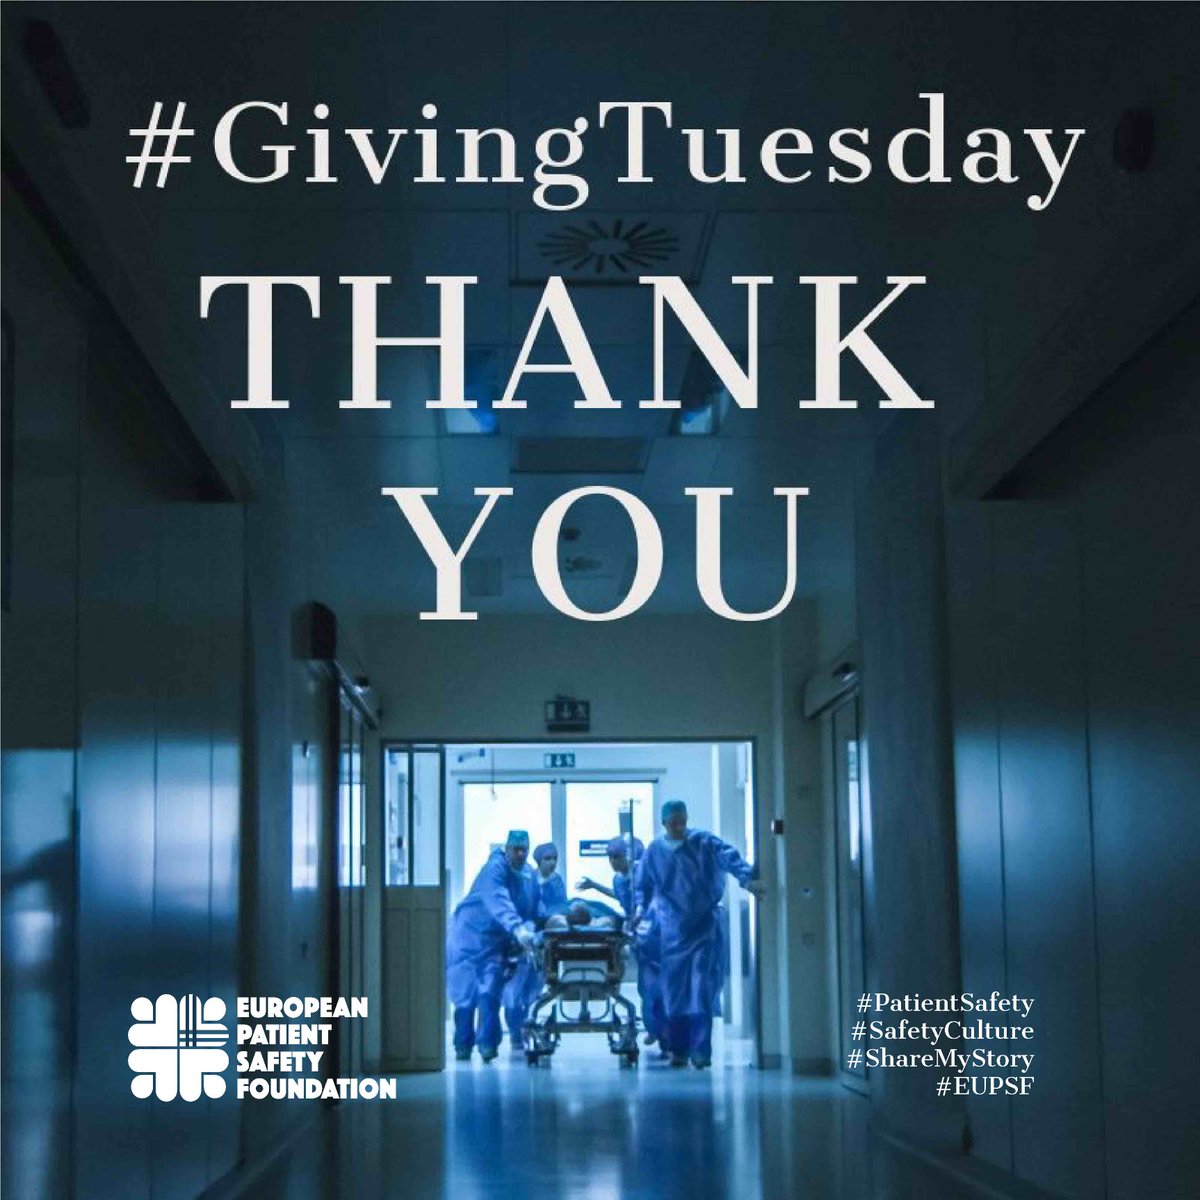 Aujourd’hui, nous remercions les professionnels de la santé et toutes les personnes qui prennent soin des patients. 

#PatientSafety #SafetyCulture #GivingTuesday #MyGivingStory #eupsf @eupsf